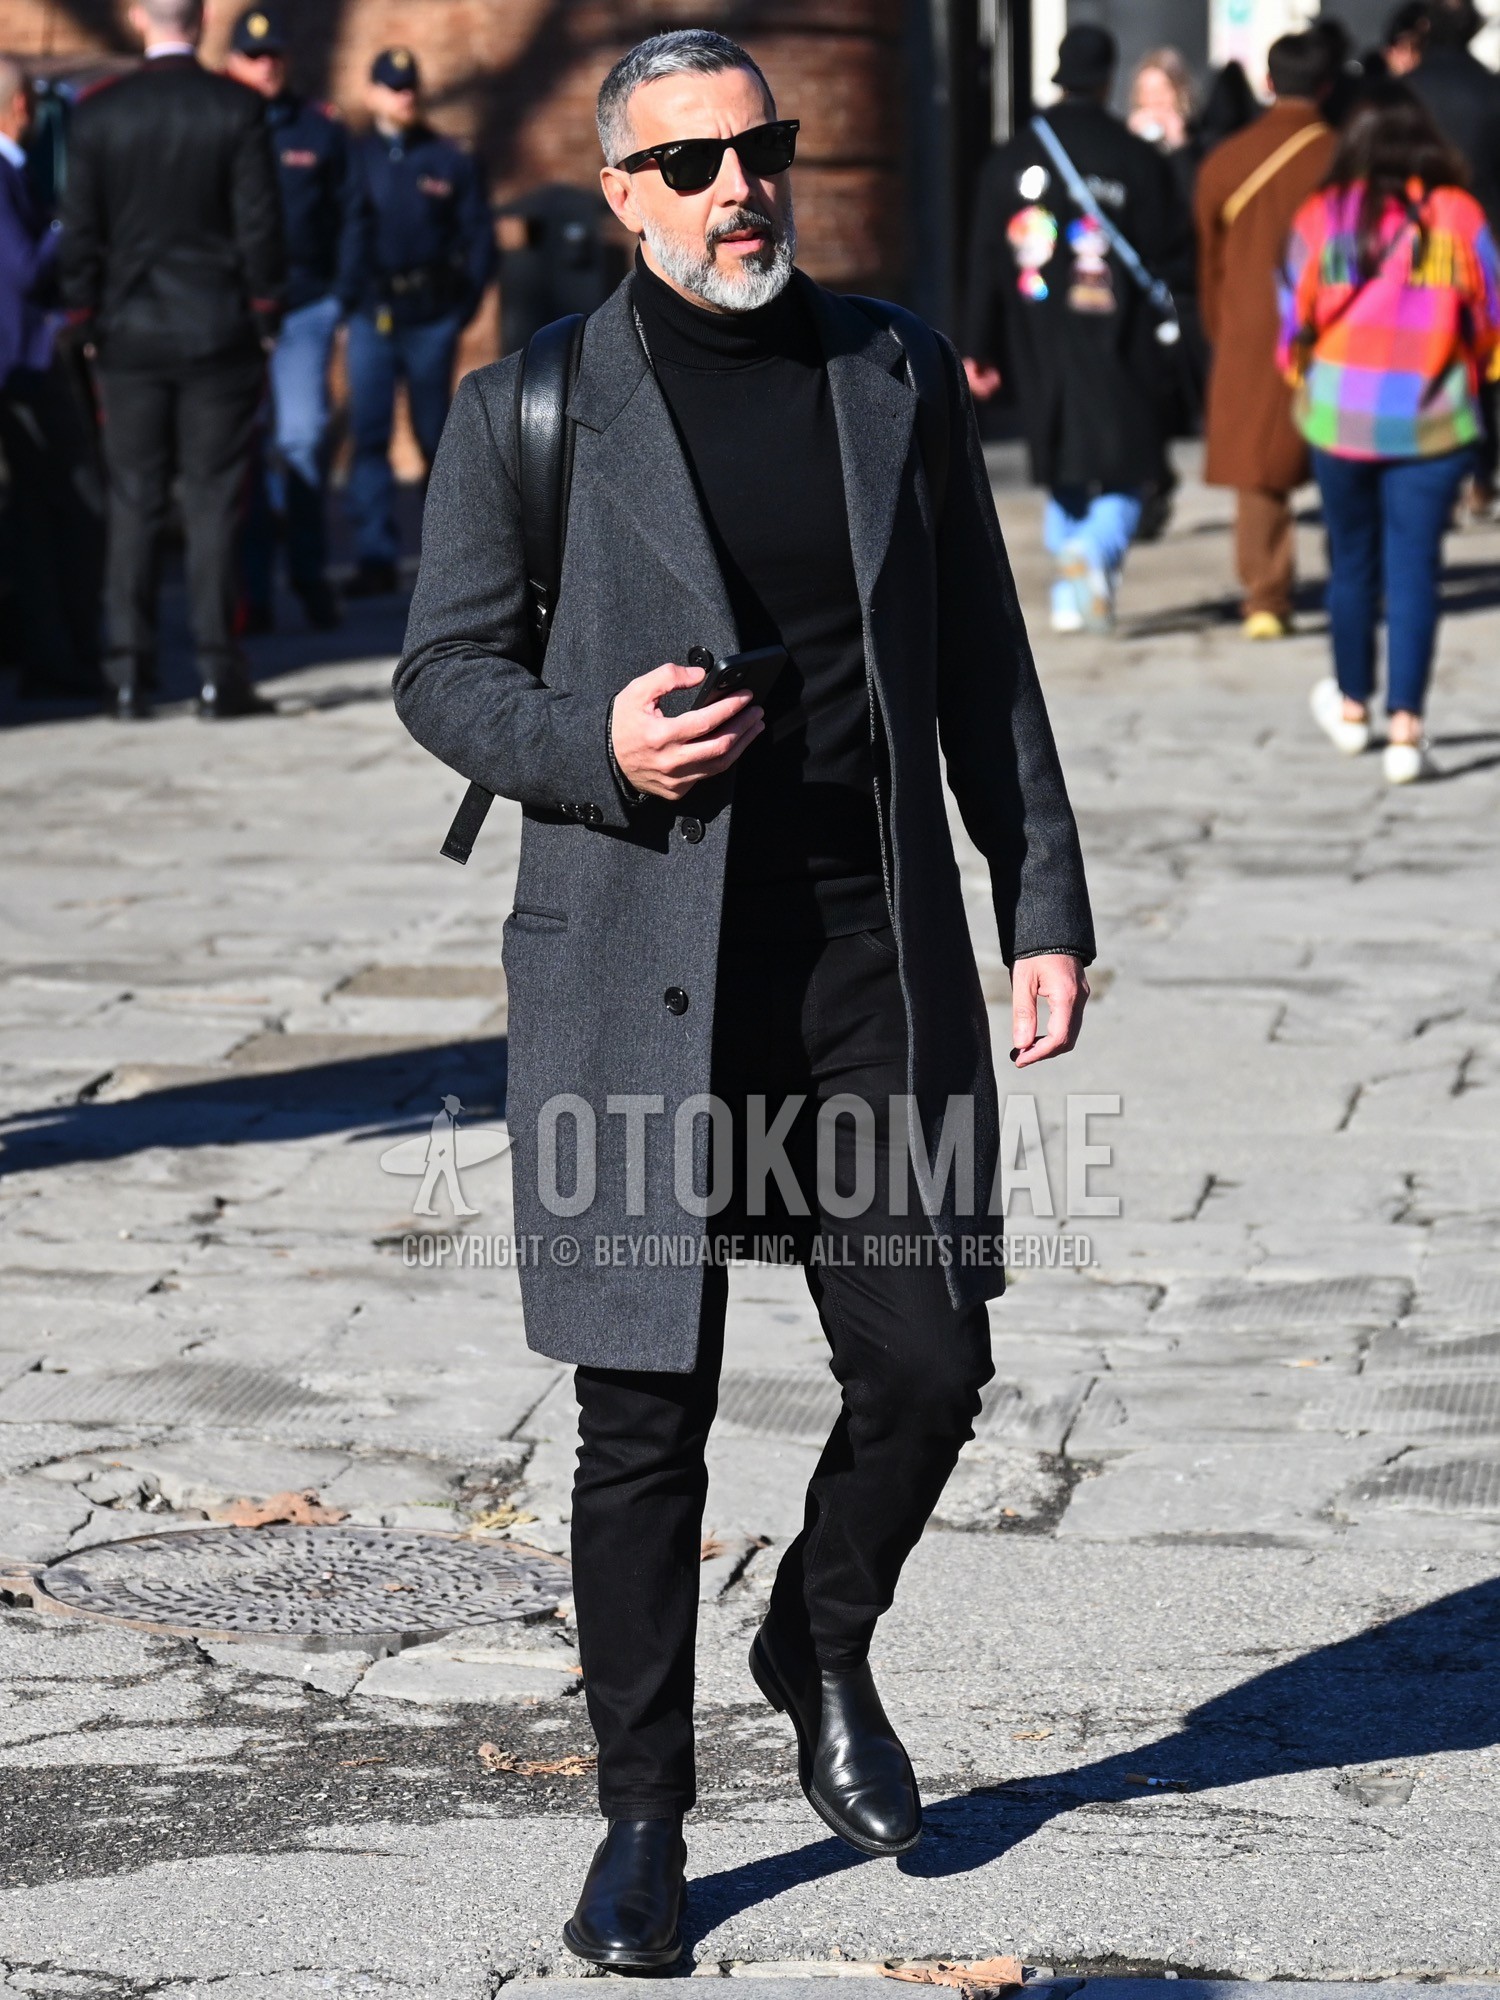 Men's autumn winter outfit with black plain sunglasses, gray plain chester coat, black plain turtleneck knit, black plain chinos, black side-gore boots.